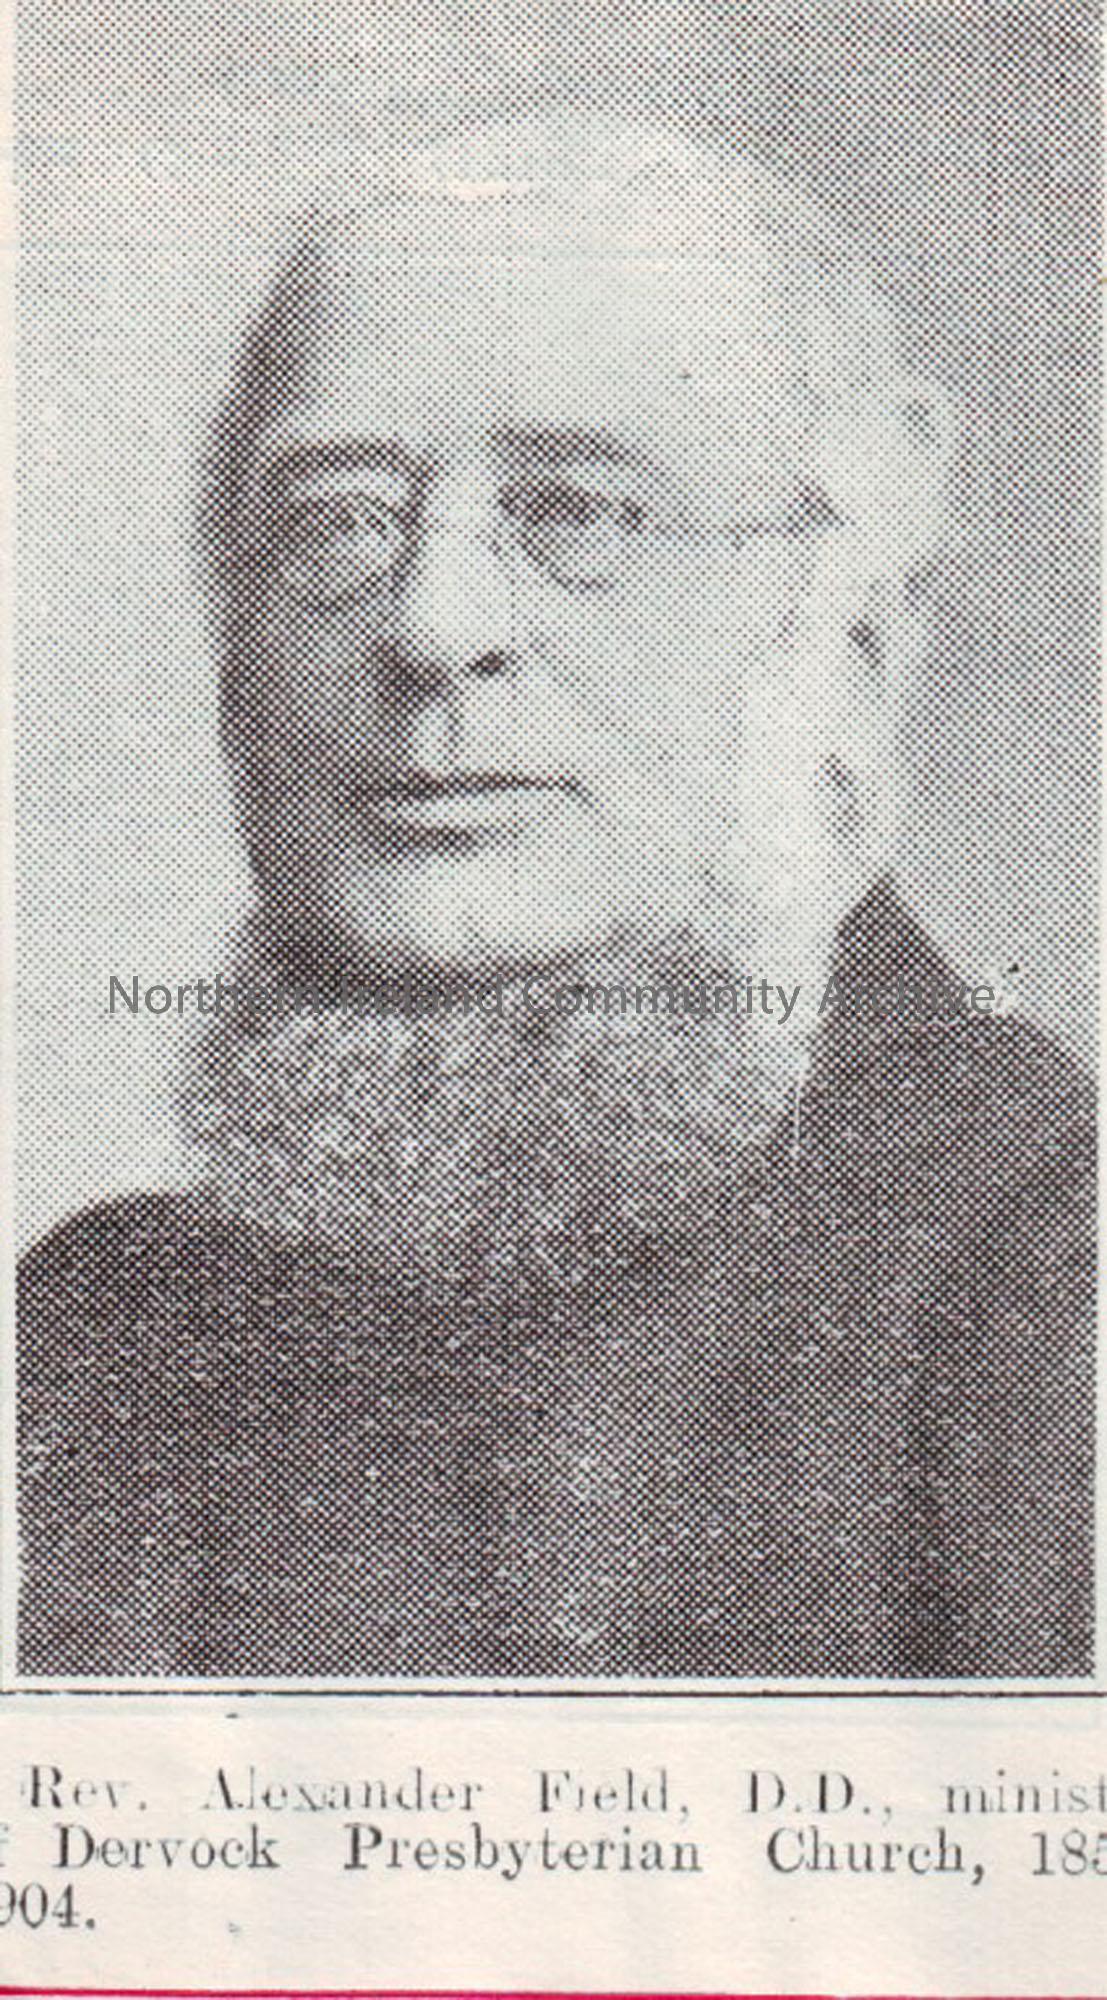 Picture of Rev. Alexander Field D.D., minister of Dervock Presbyterian Church.1857-1904.